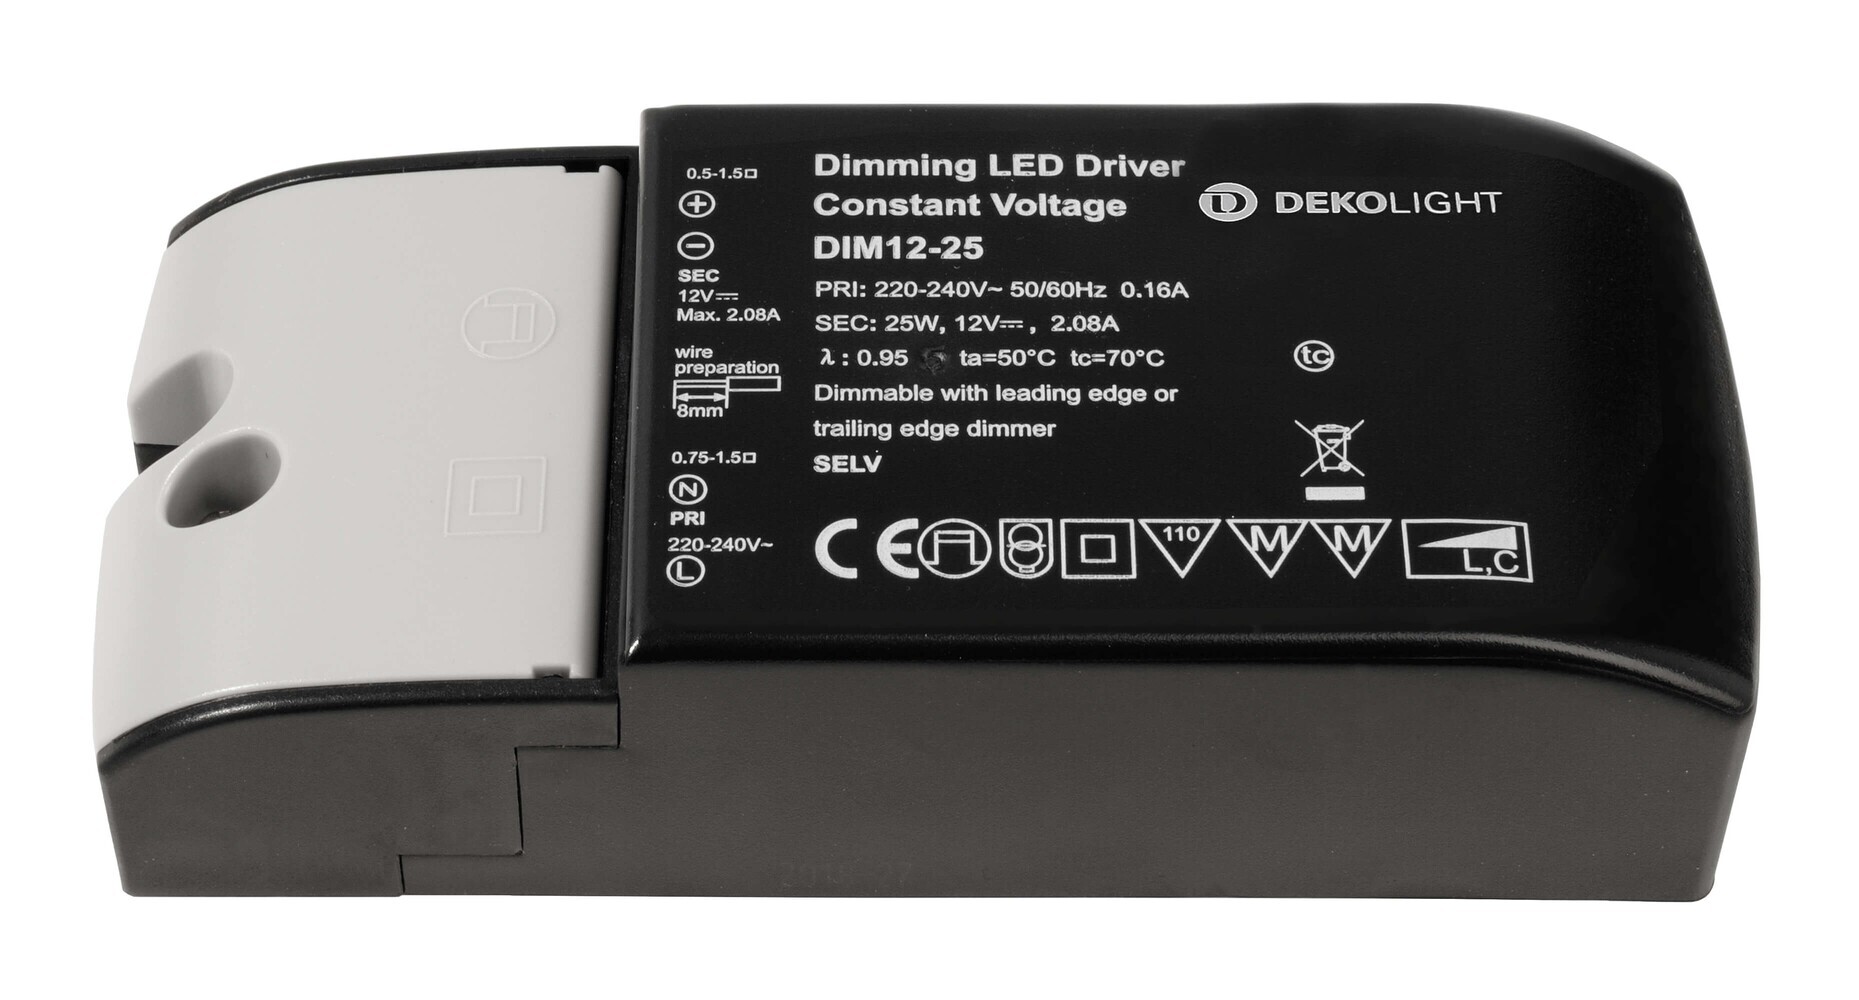 Energiesparendes, dimmbares LED Netzteil von Deko-Light